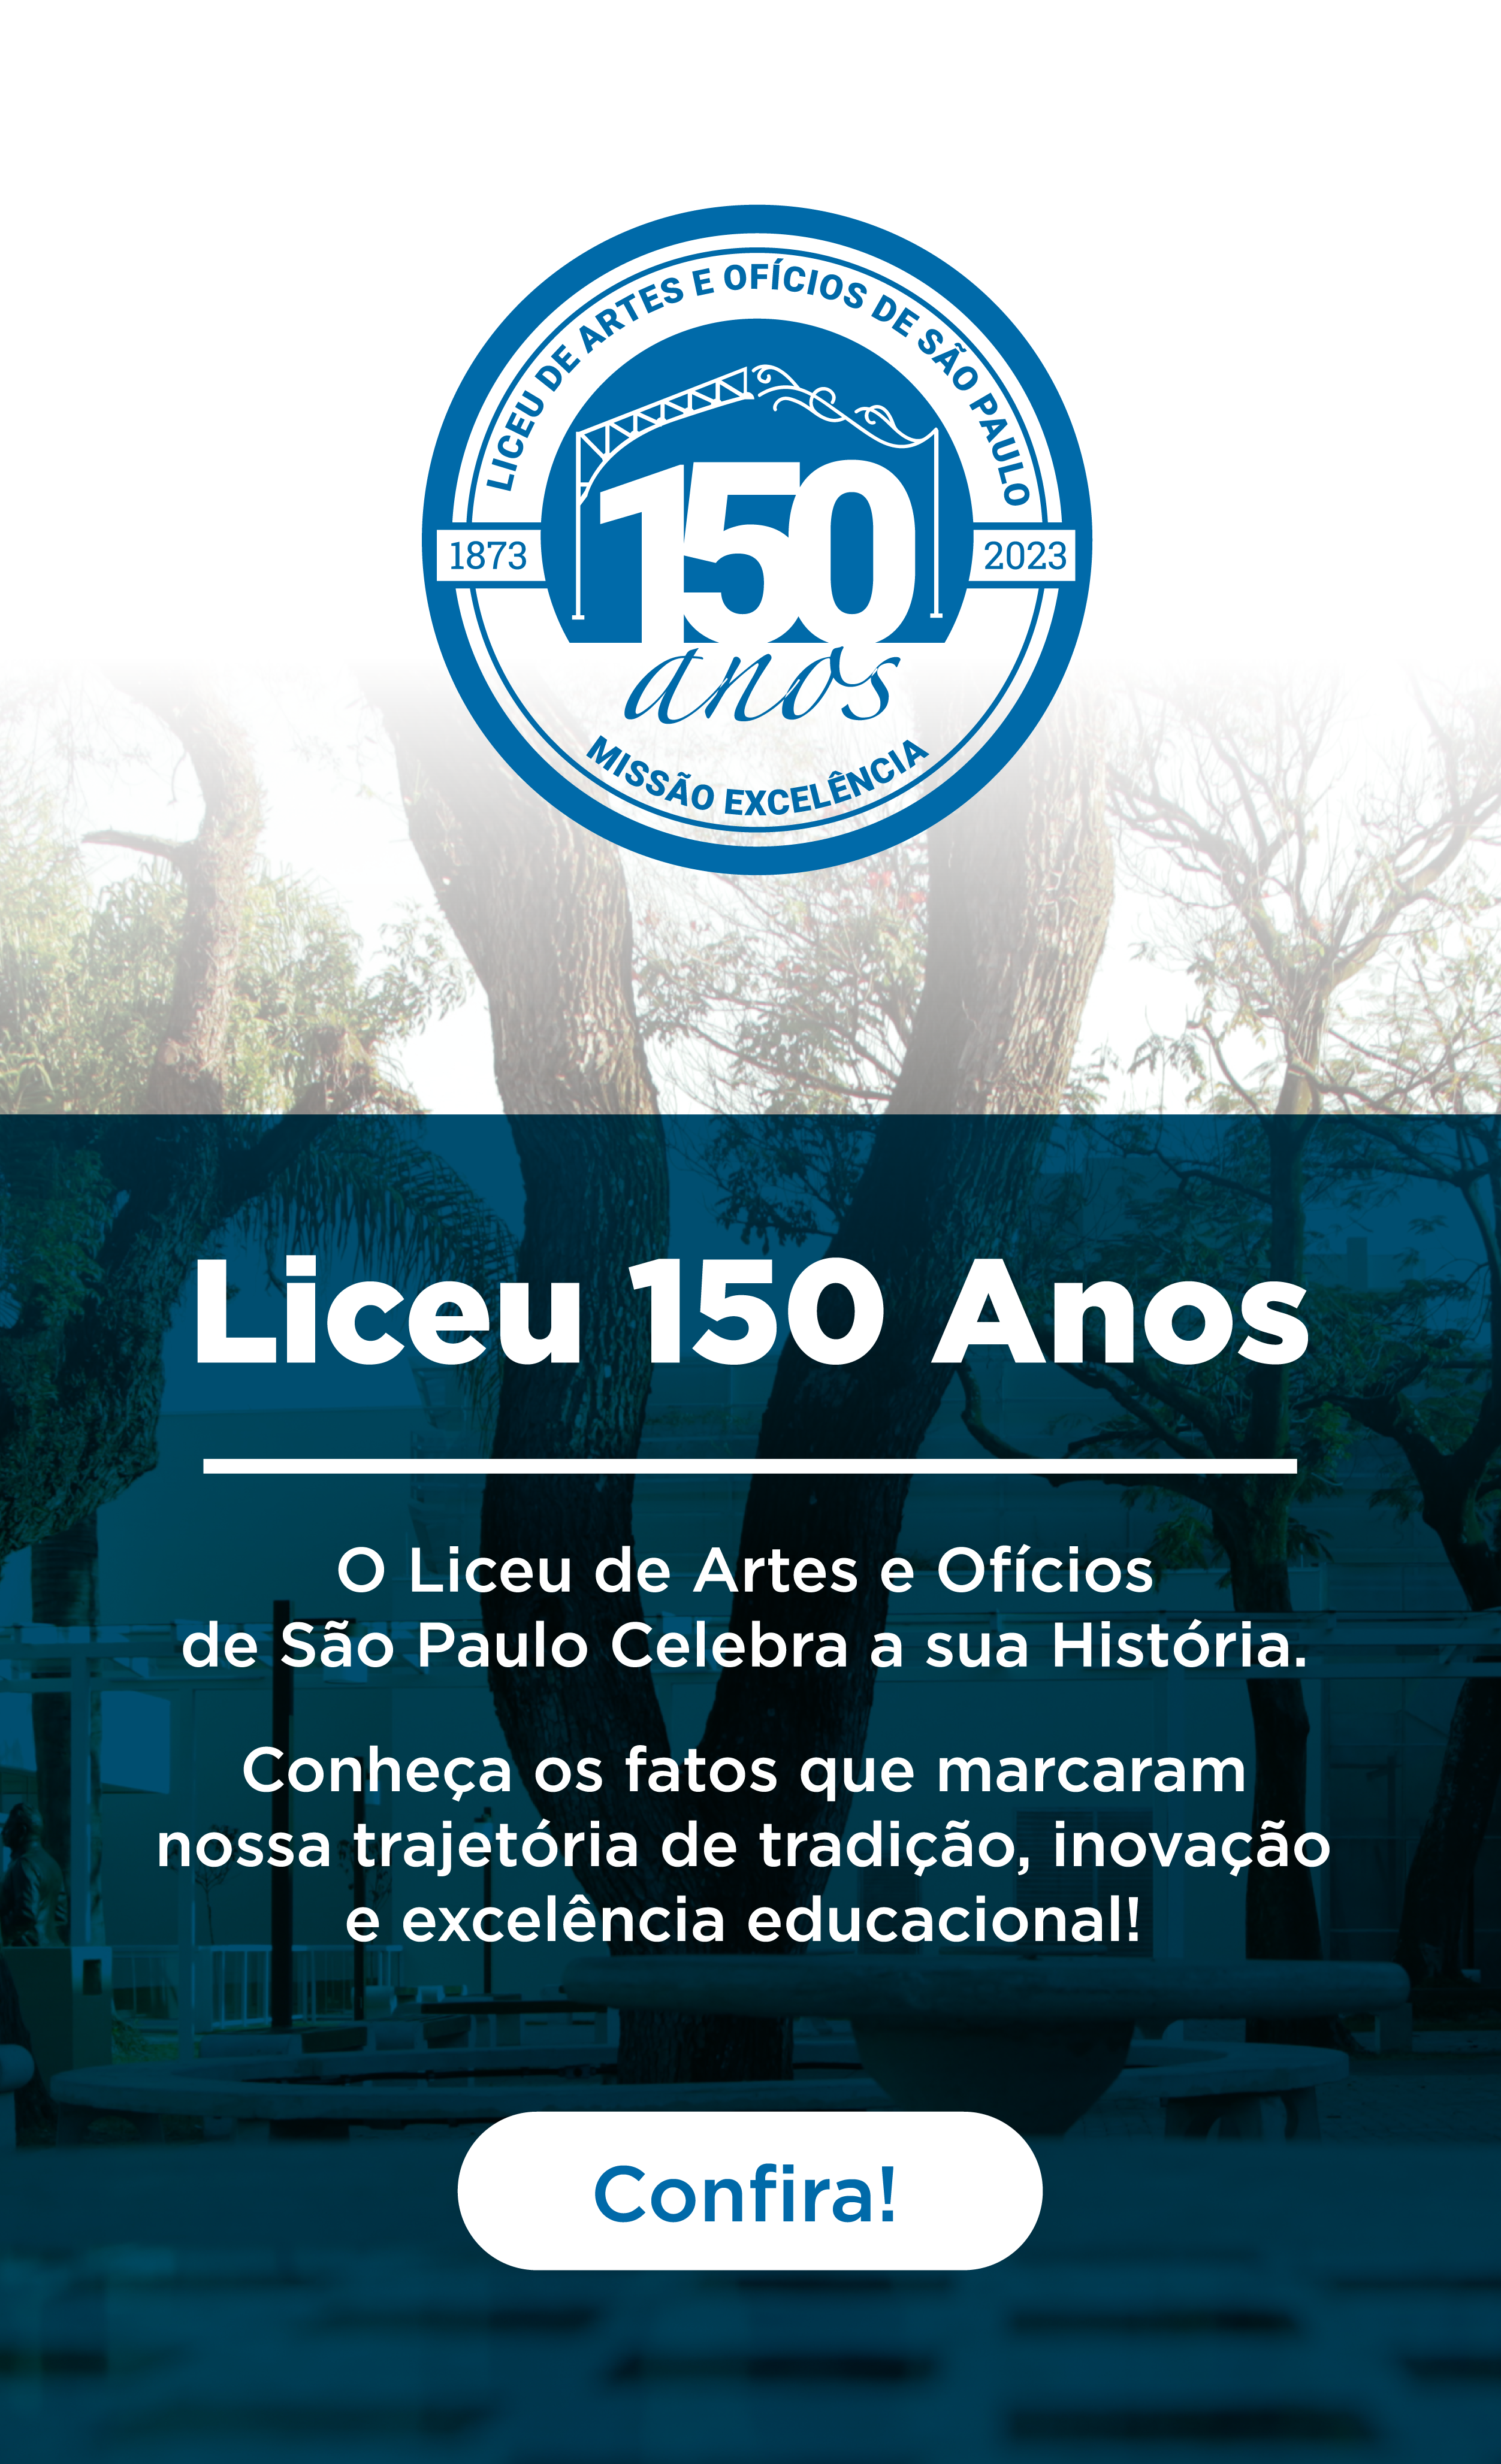 150 anos de história do Liceu de Artes e Ofícios de São Paulo,